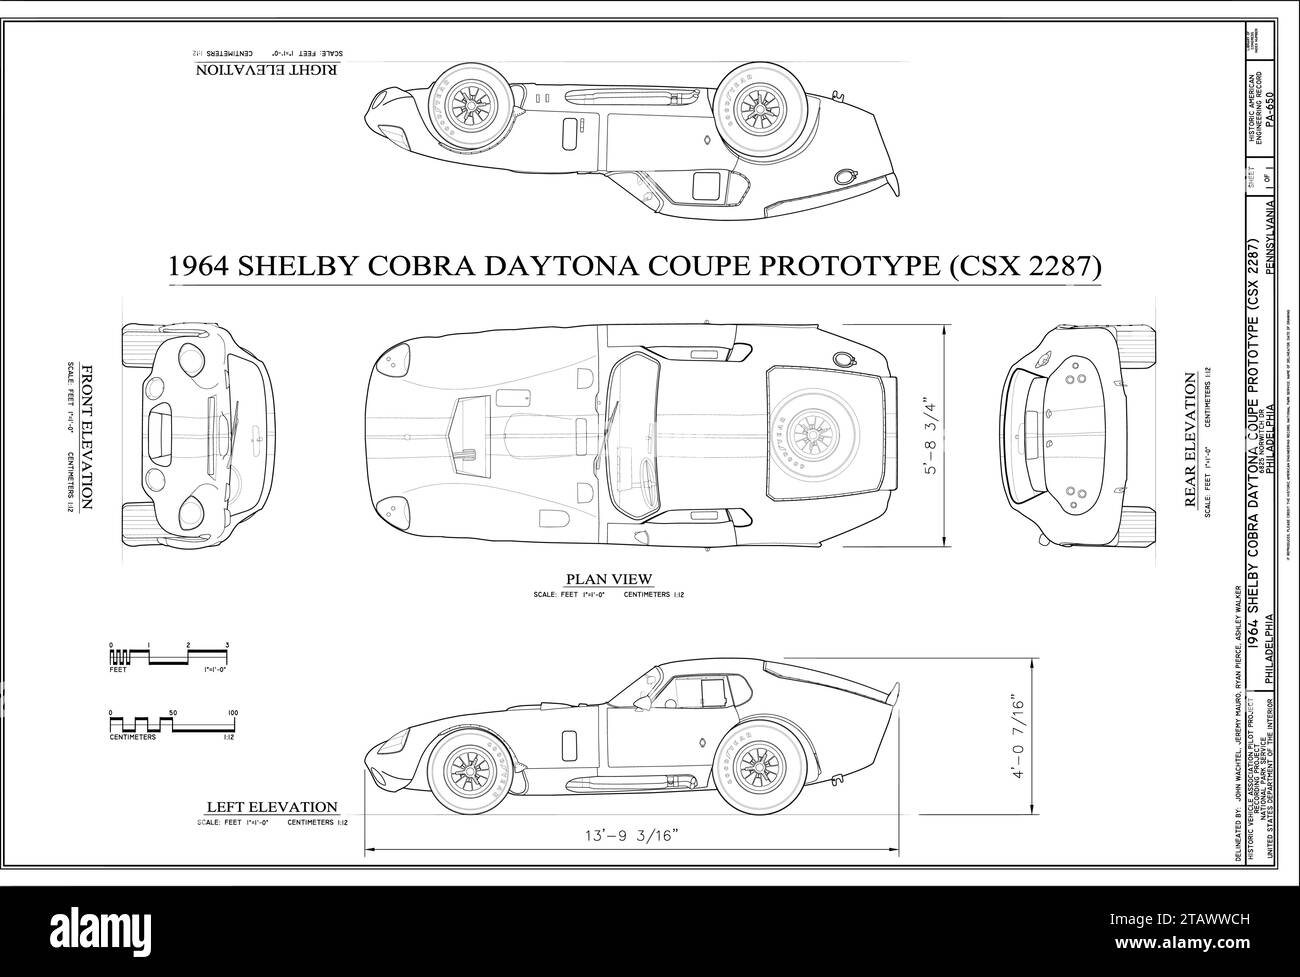 Modèle de voiture prototype Shelby Cobra Daytona coupe 1964 Illustration de Vecteur